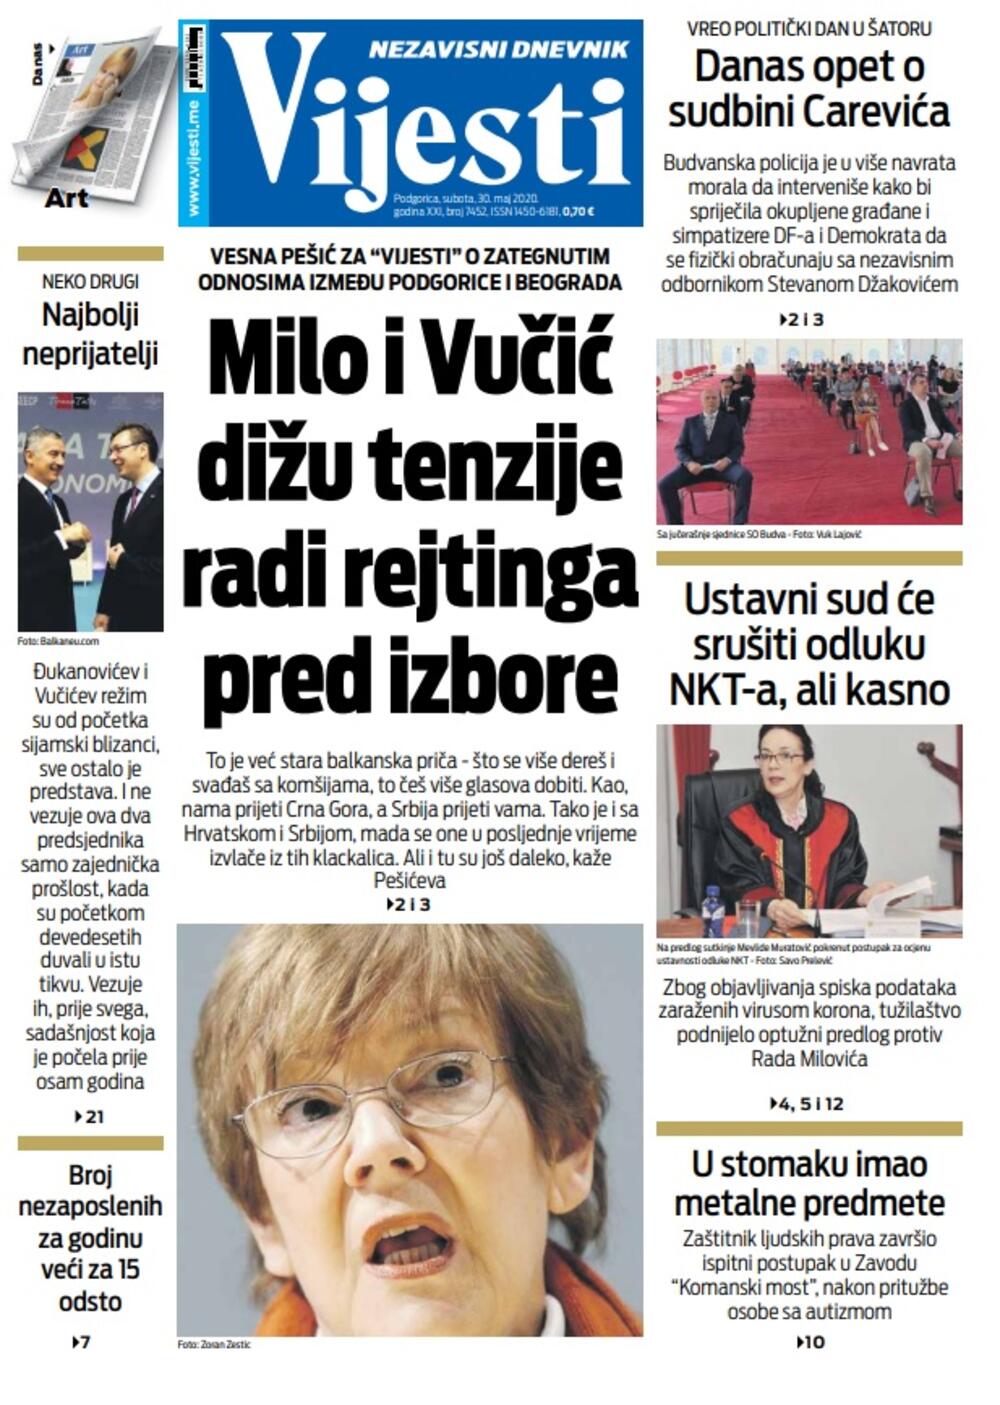 Naslovna strana "Vijesti" za subotu 30. maj 2020. godine, Foto: Vijesti